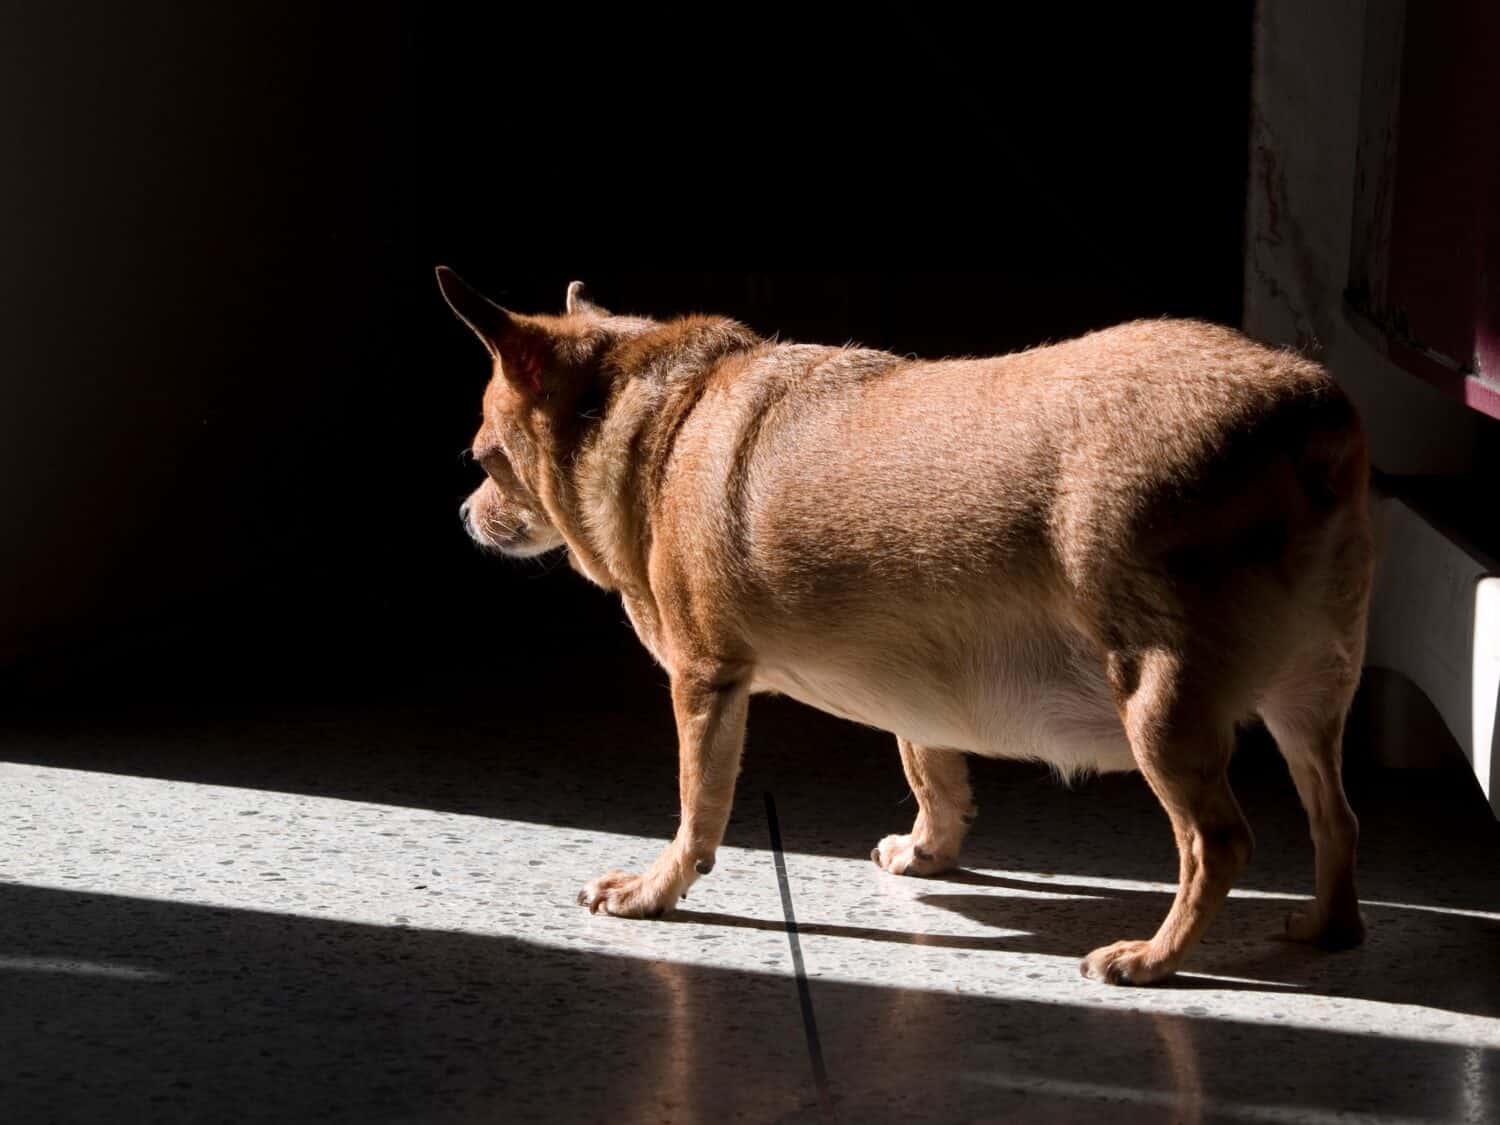 Grasso cane chihuahua incinta in piedi sul pavimento nella luce del mattino